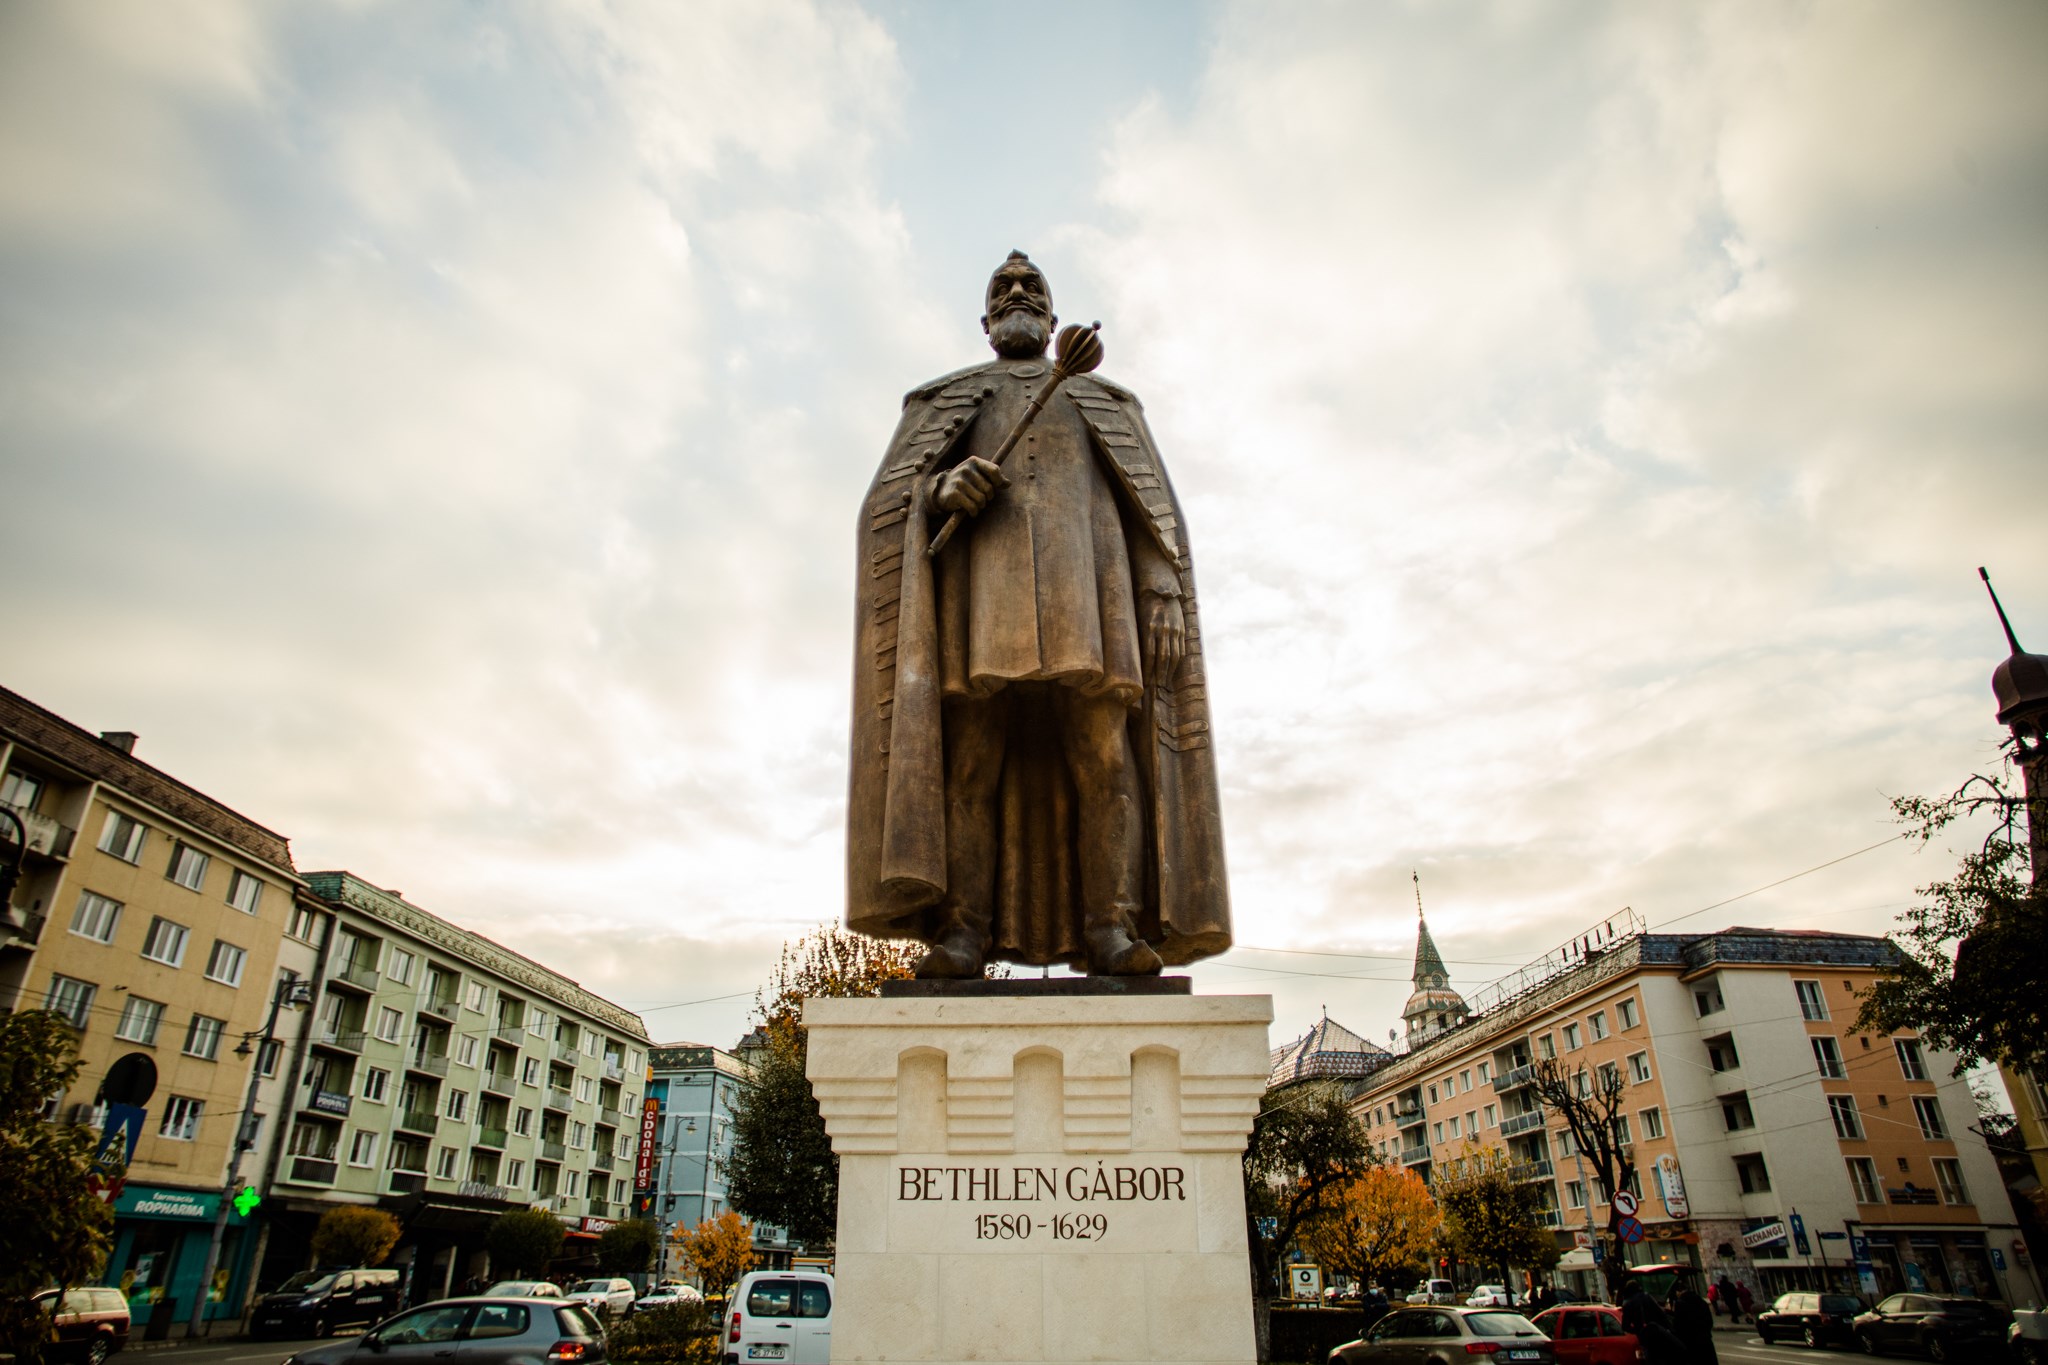 Inaugurada la estatua del Príncipe Bethlen de Transilvania en Marosvásárhely Targu Mures